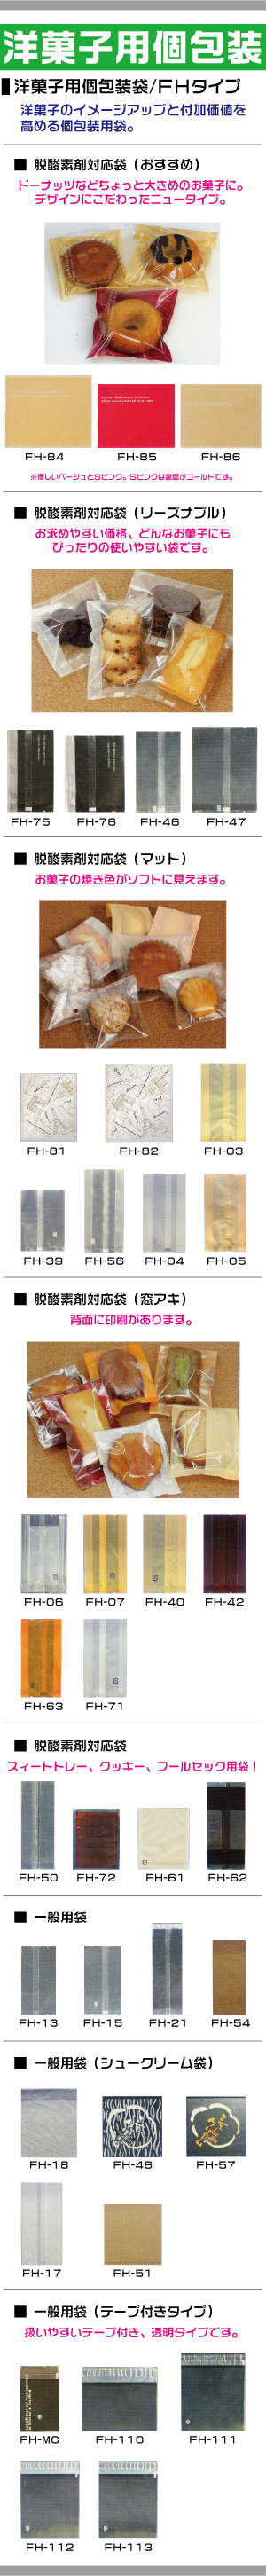 FH - 洋菓子用個包装袋 【商品詳細ページ】 パッケージモール®